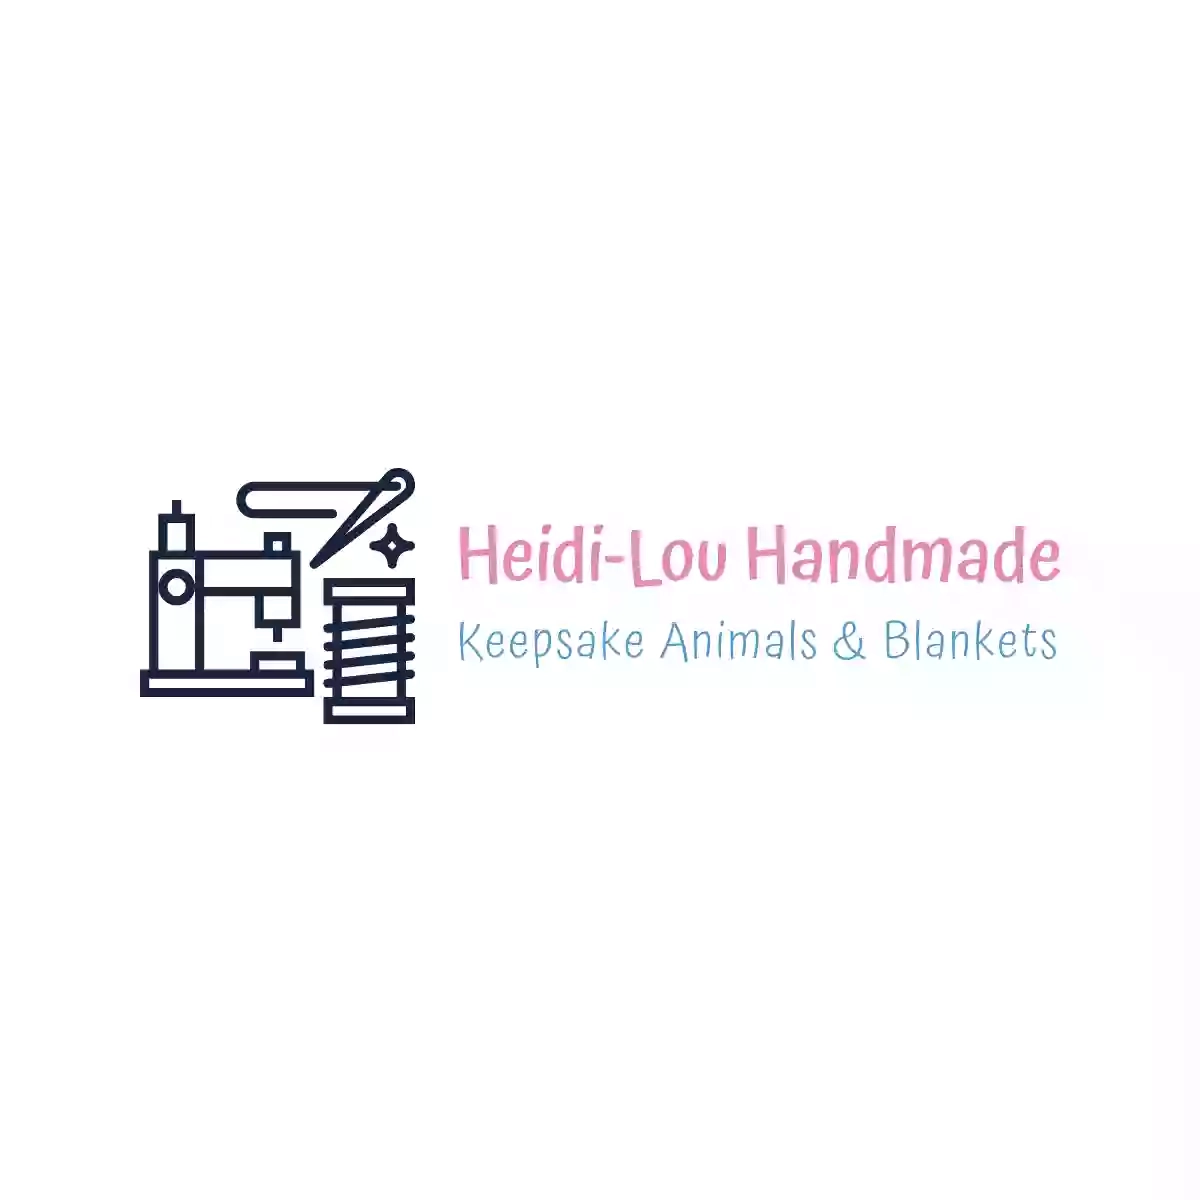 Heidi-Lou Handmade Keepsakes